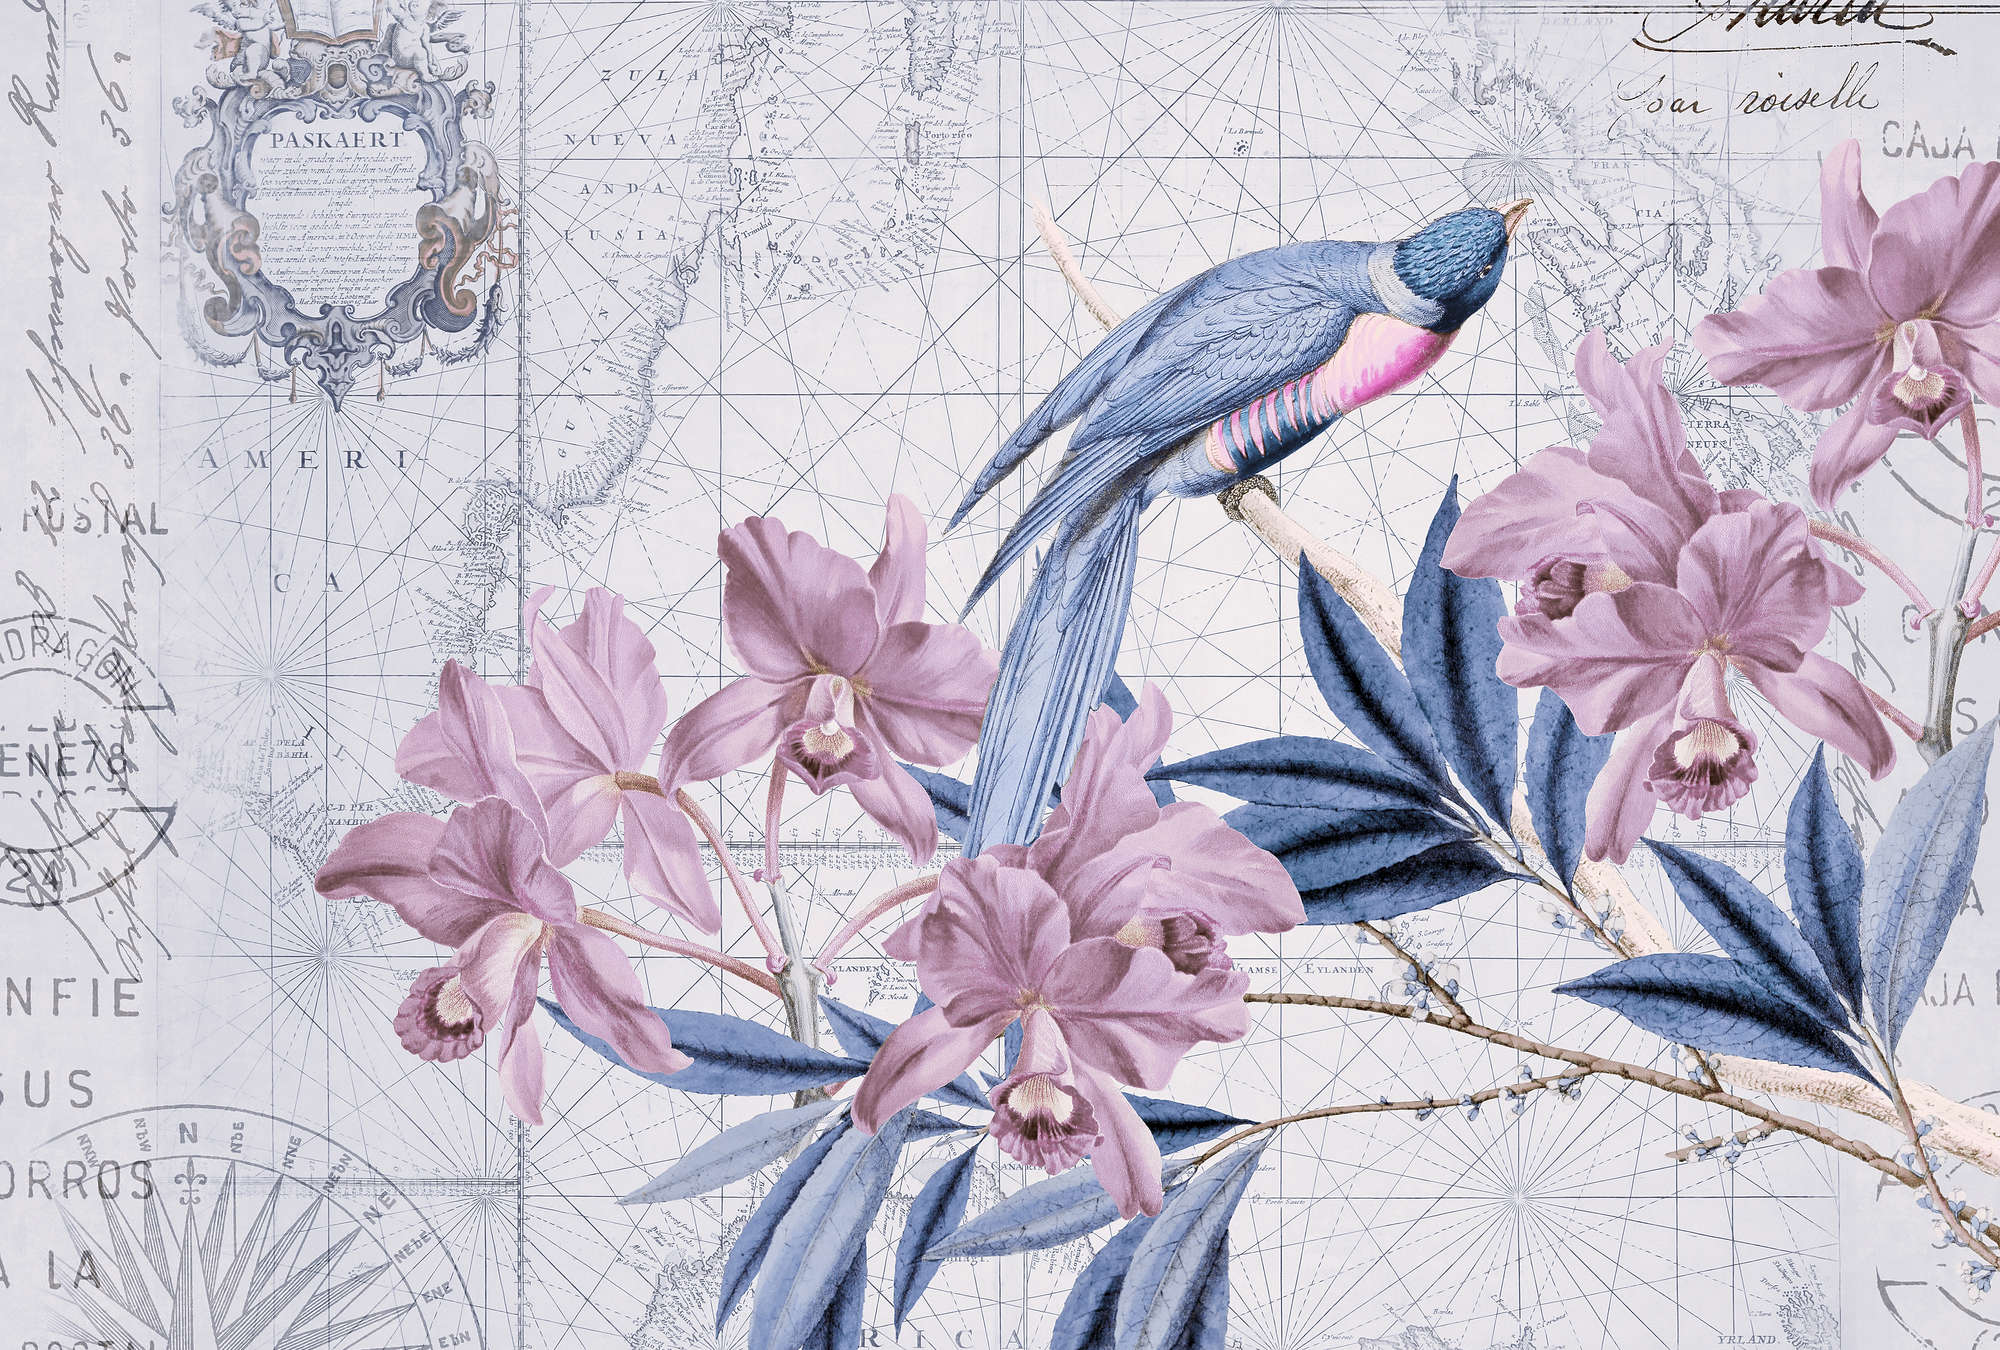             Papier peint décoratif vintage avec motif de carte géographique et de nature
        